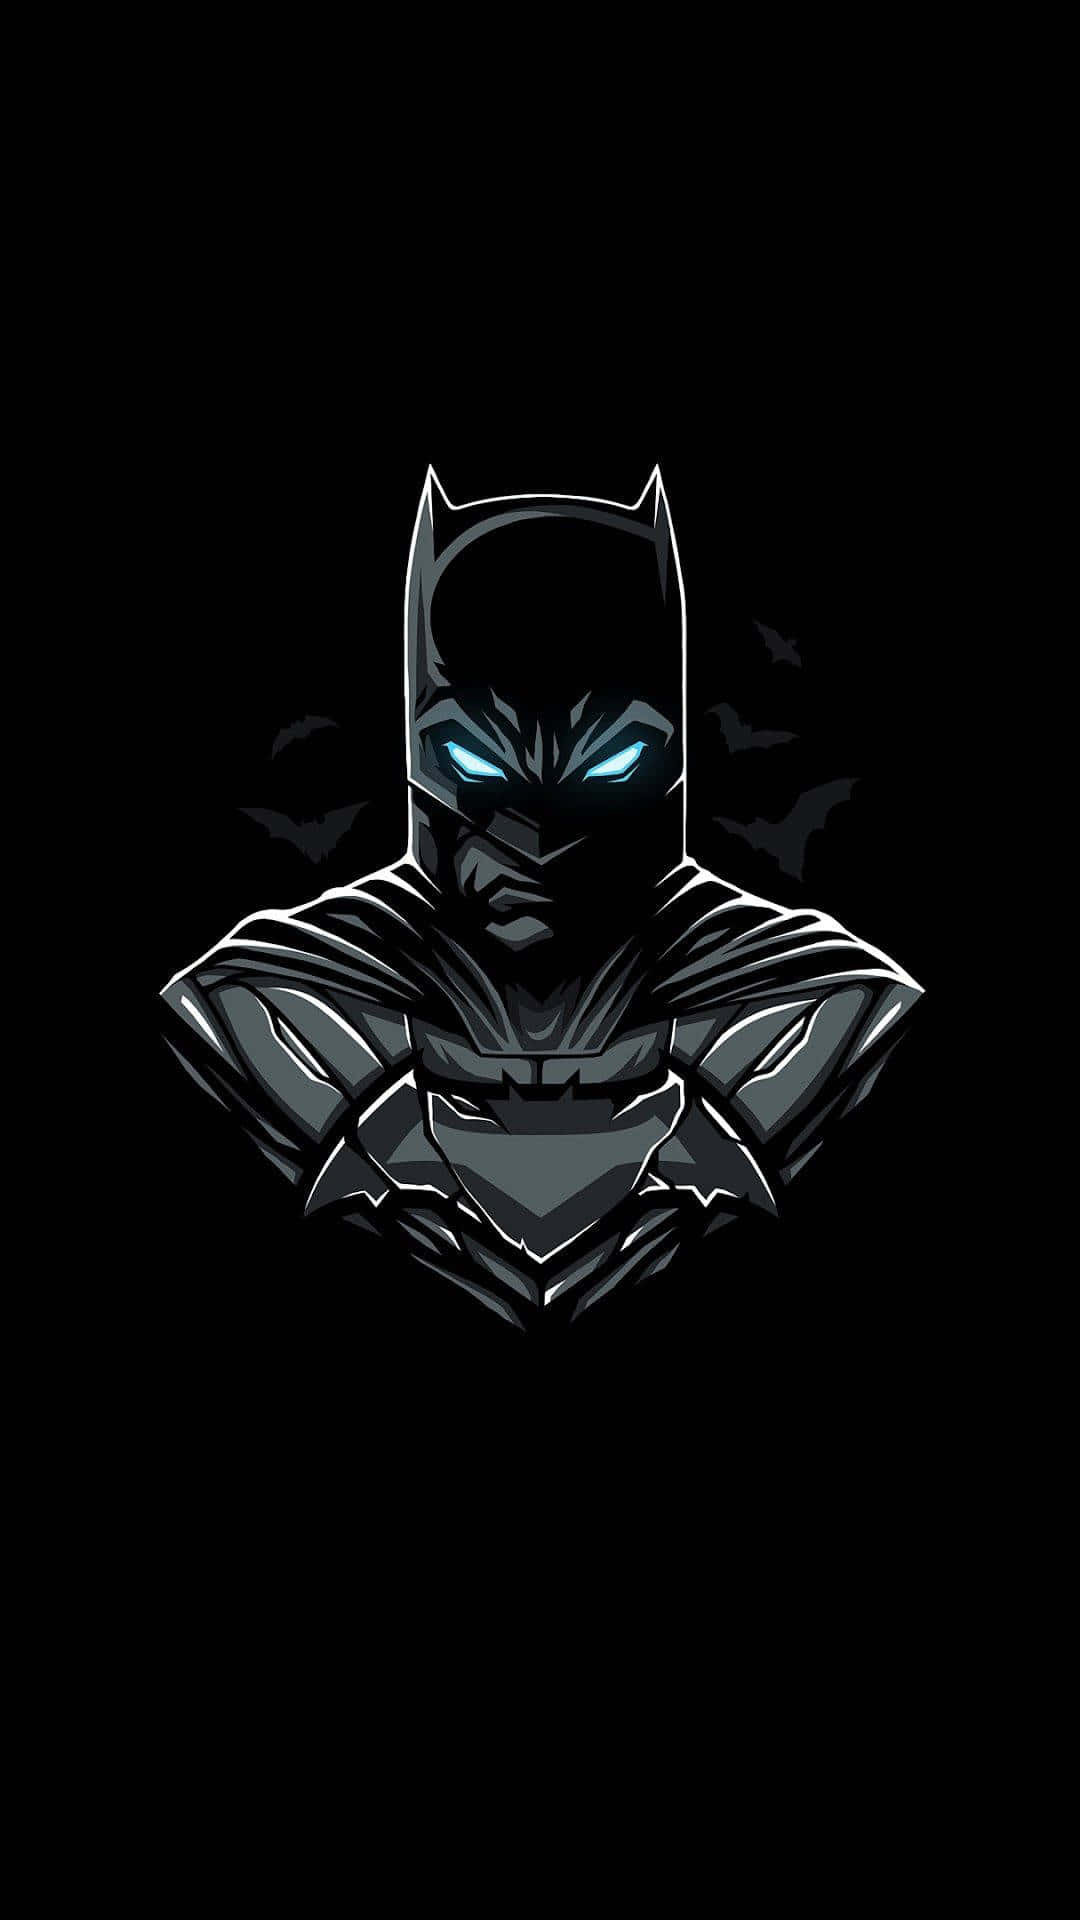 Exibao Logotipo Do Batman Onde Quer Que Vá Com Este Incrível Iphone Do Batman. Papel de Parede